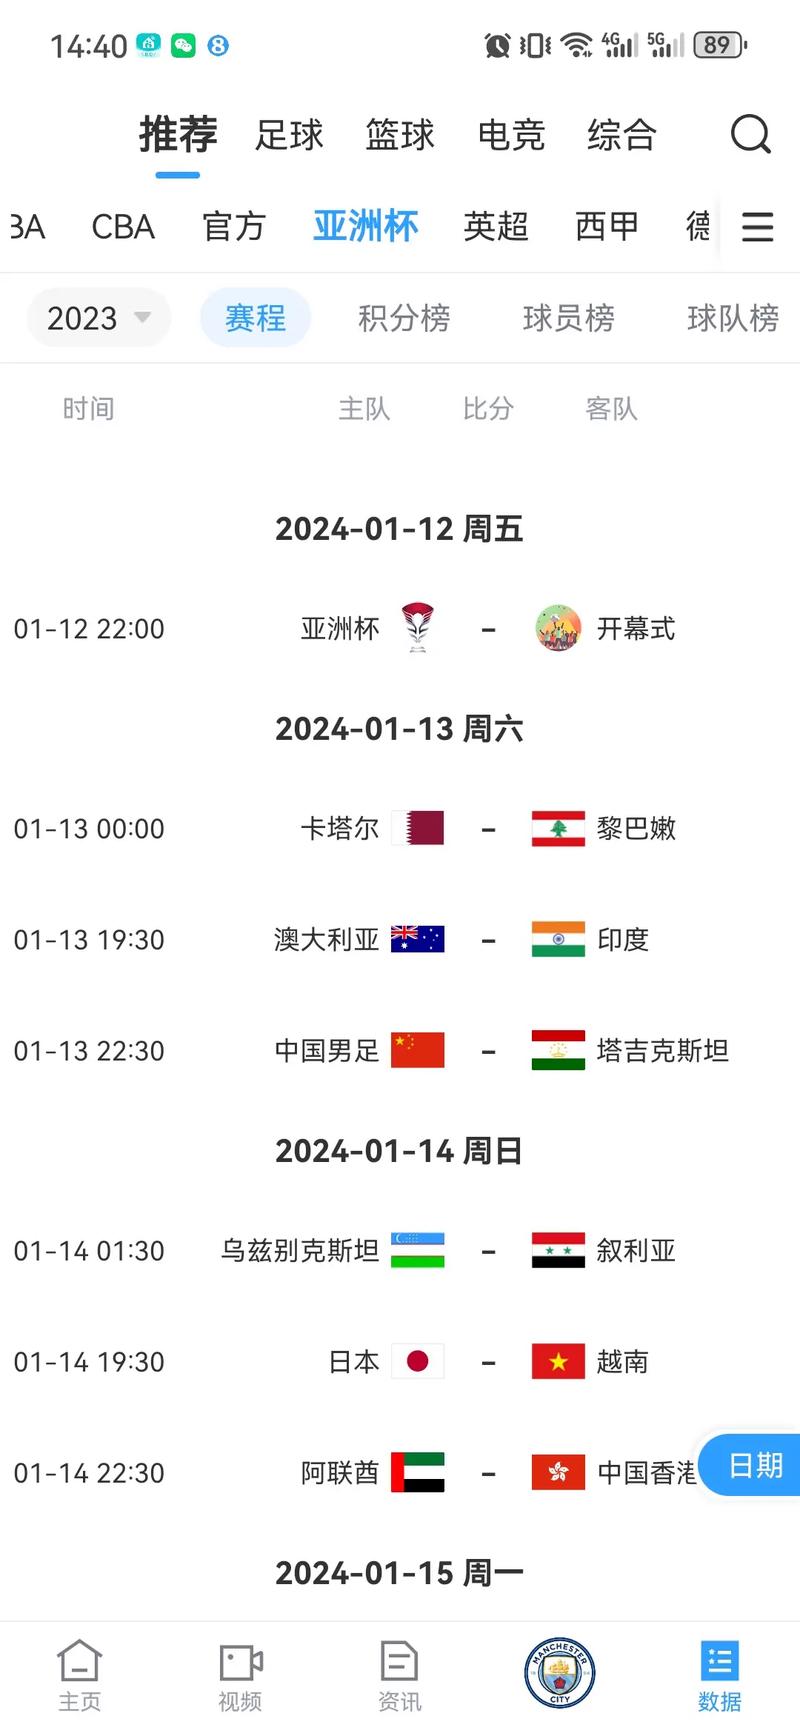 亚洲杯赛程表2023什么时候开始